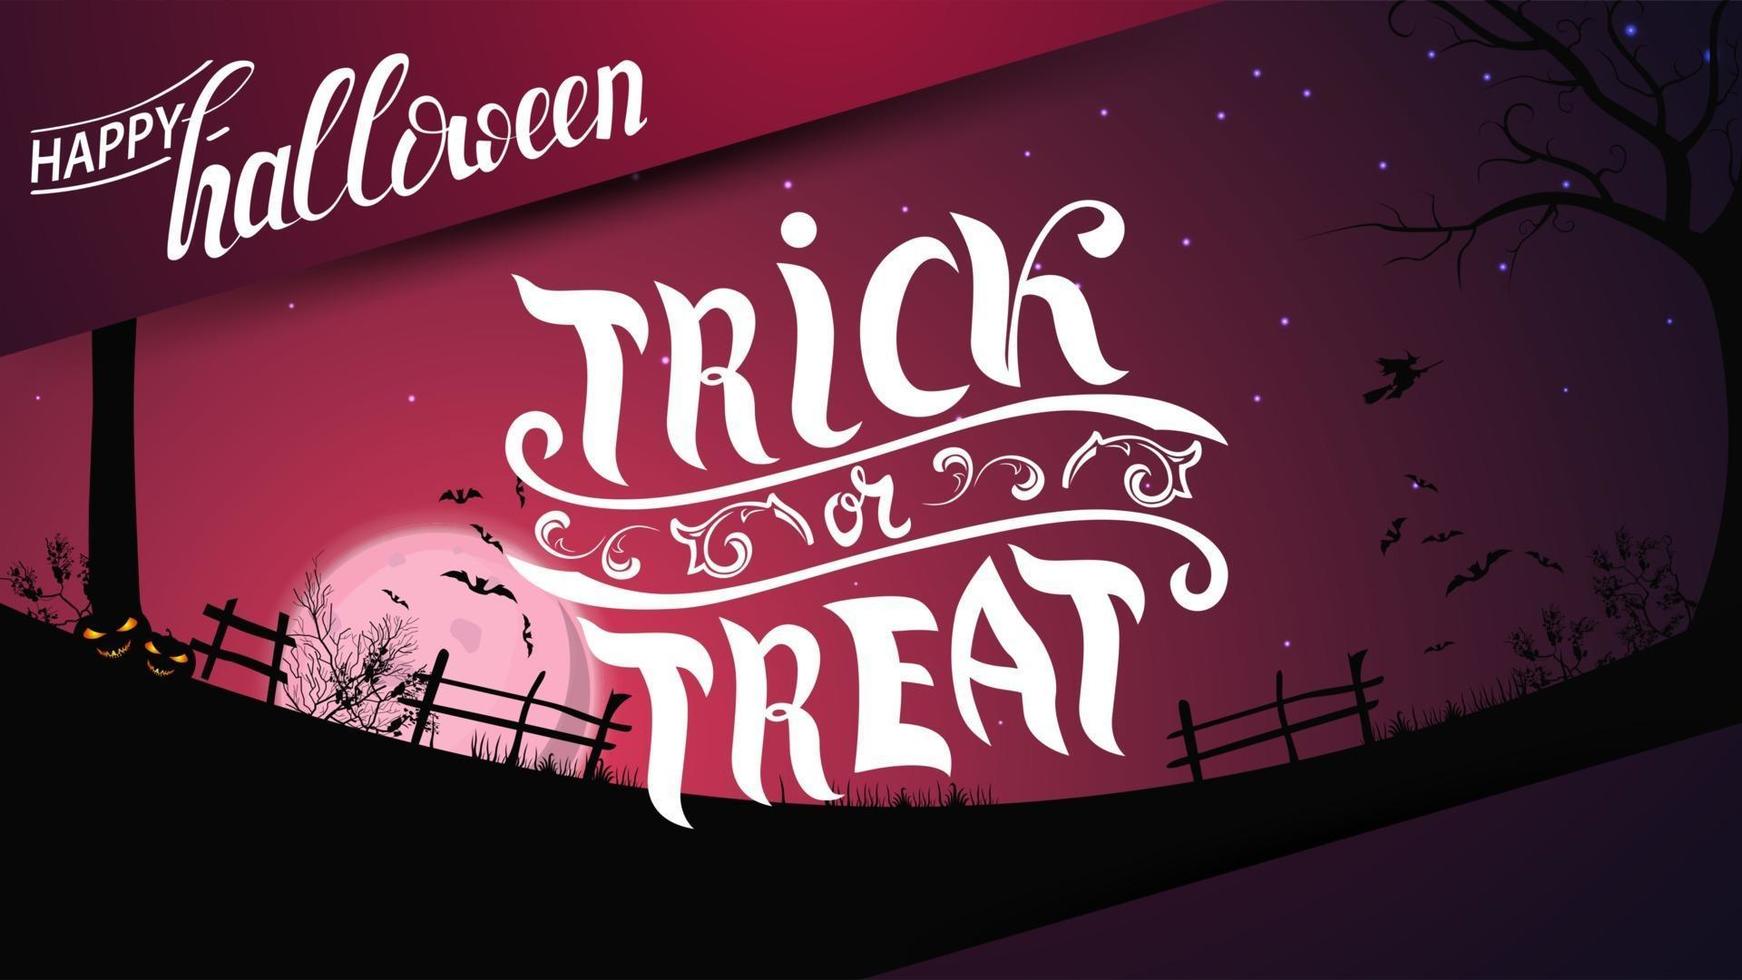 wenskaart, trick or treat, kaart met halloween landschap op de achtergrond. Halloween-achtergrond, volle roze maan, sterrenhemel, helder veld met hek, gras, bomen, vleermuizen en een heks op een bezem. vector